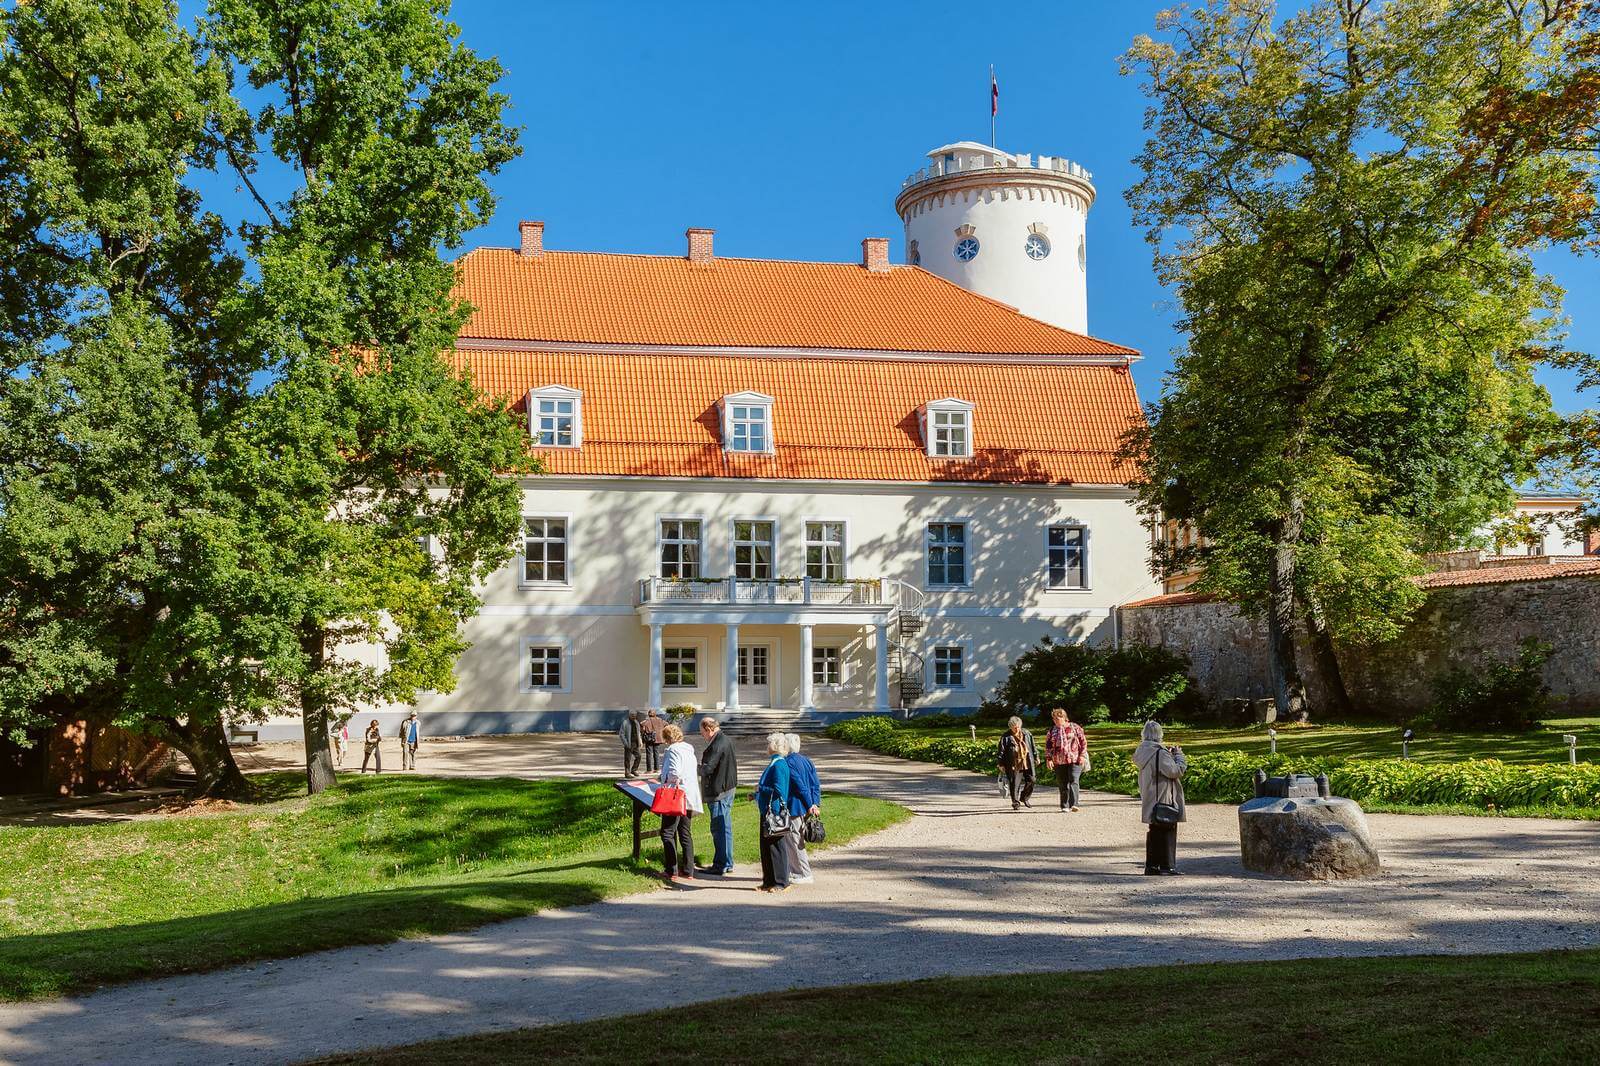 Foto: Das neue Schloss Cesis an der Ordensburg Cesis/Wenden - Bildrechte latvia.travel - Lupe Reisen